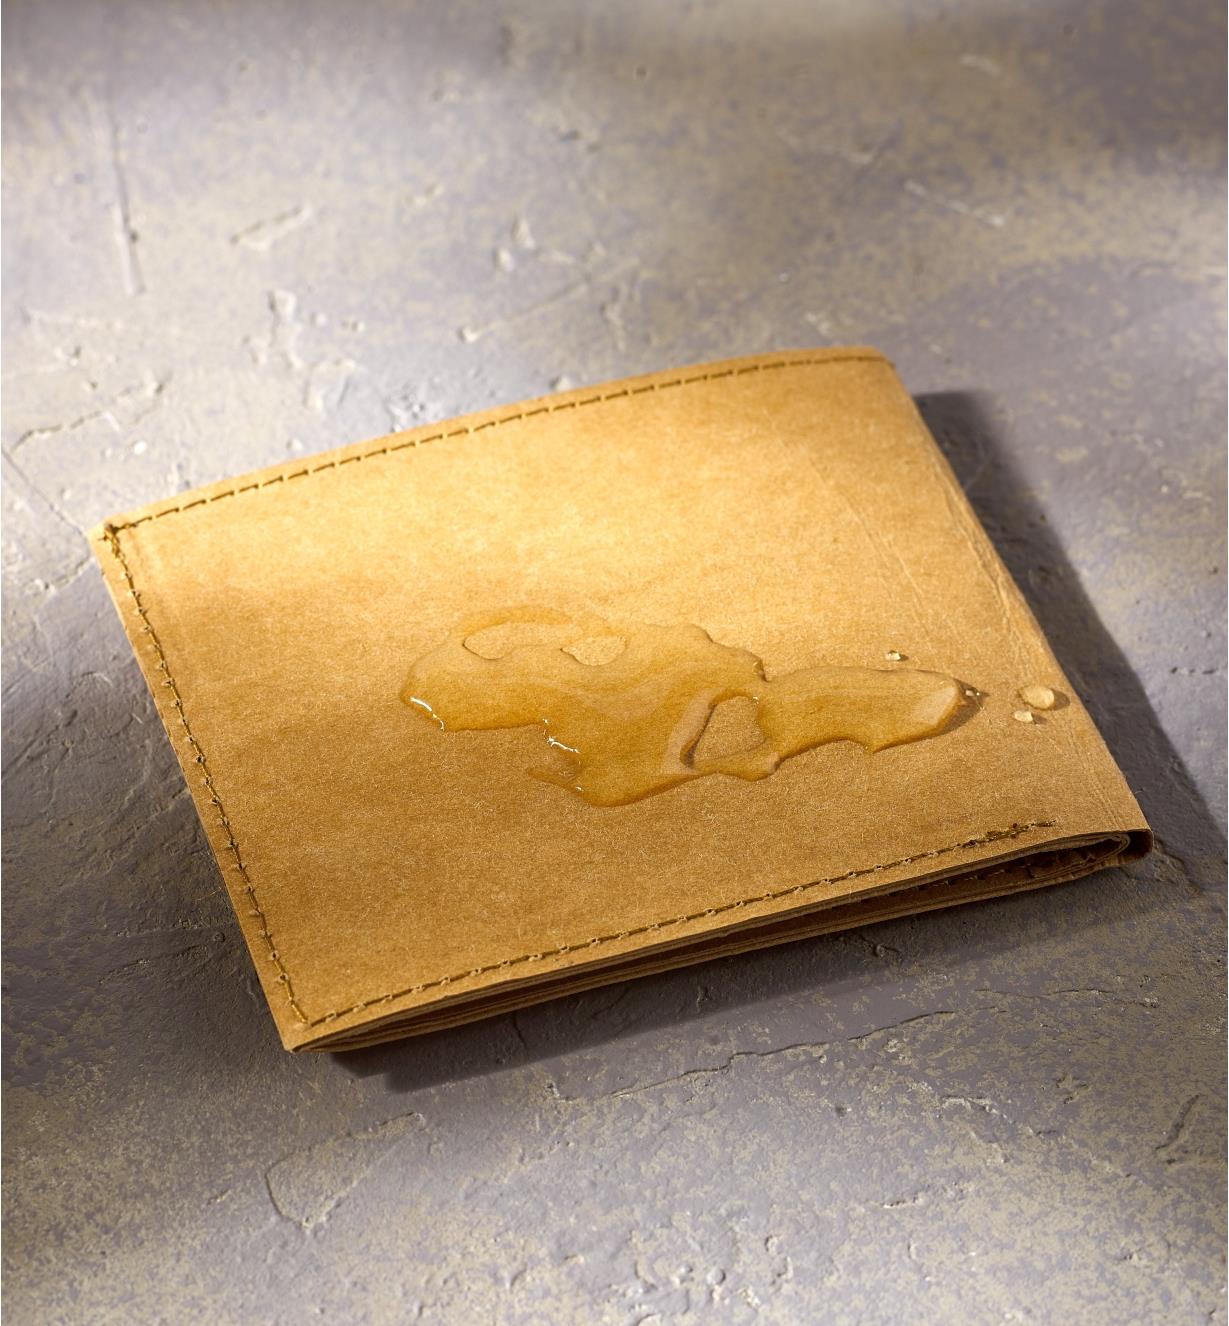 Portefeuille Tree Leather ne laissant pas l’eau pénétrer sa couverture et déposé sur une table